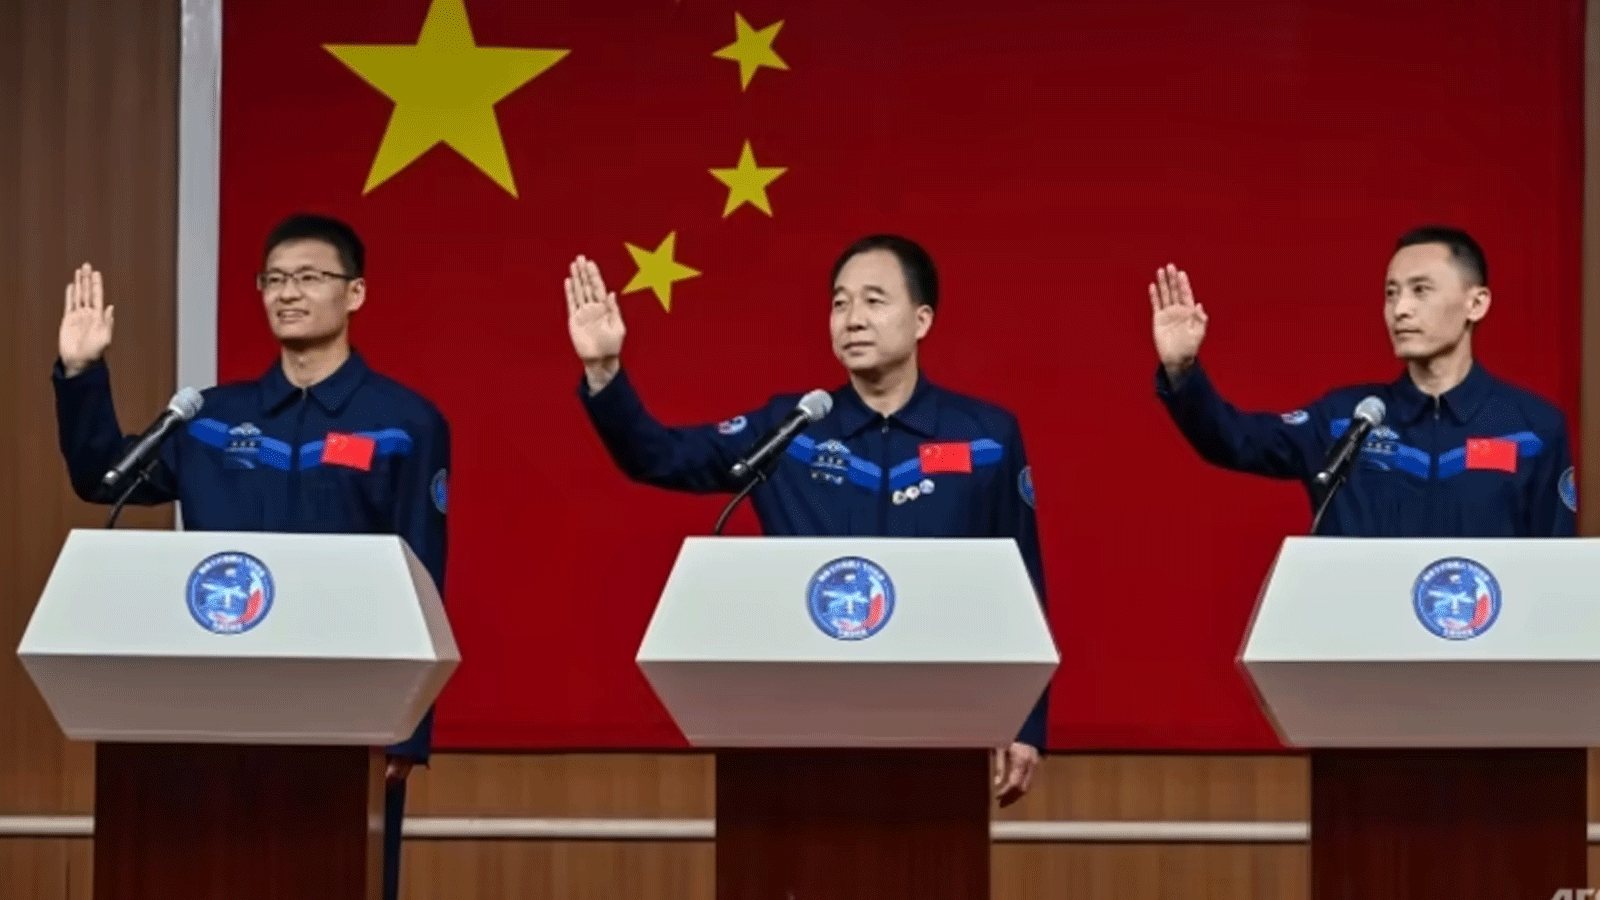 الرواد غي هايشو(Taikonauts (Gui Haichao و Jing Haipeng و Zhu Yangzhu سينطلقون إلى الفضاء على متن سفينة Shenzhou-16 